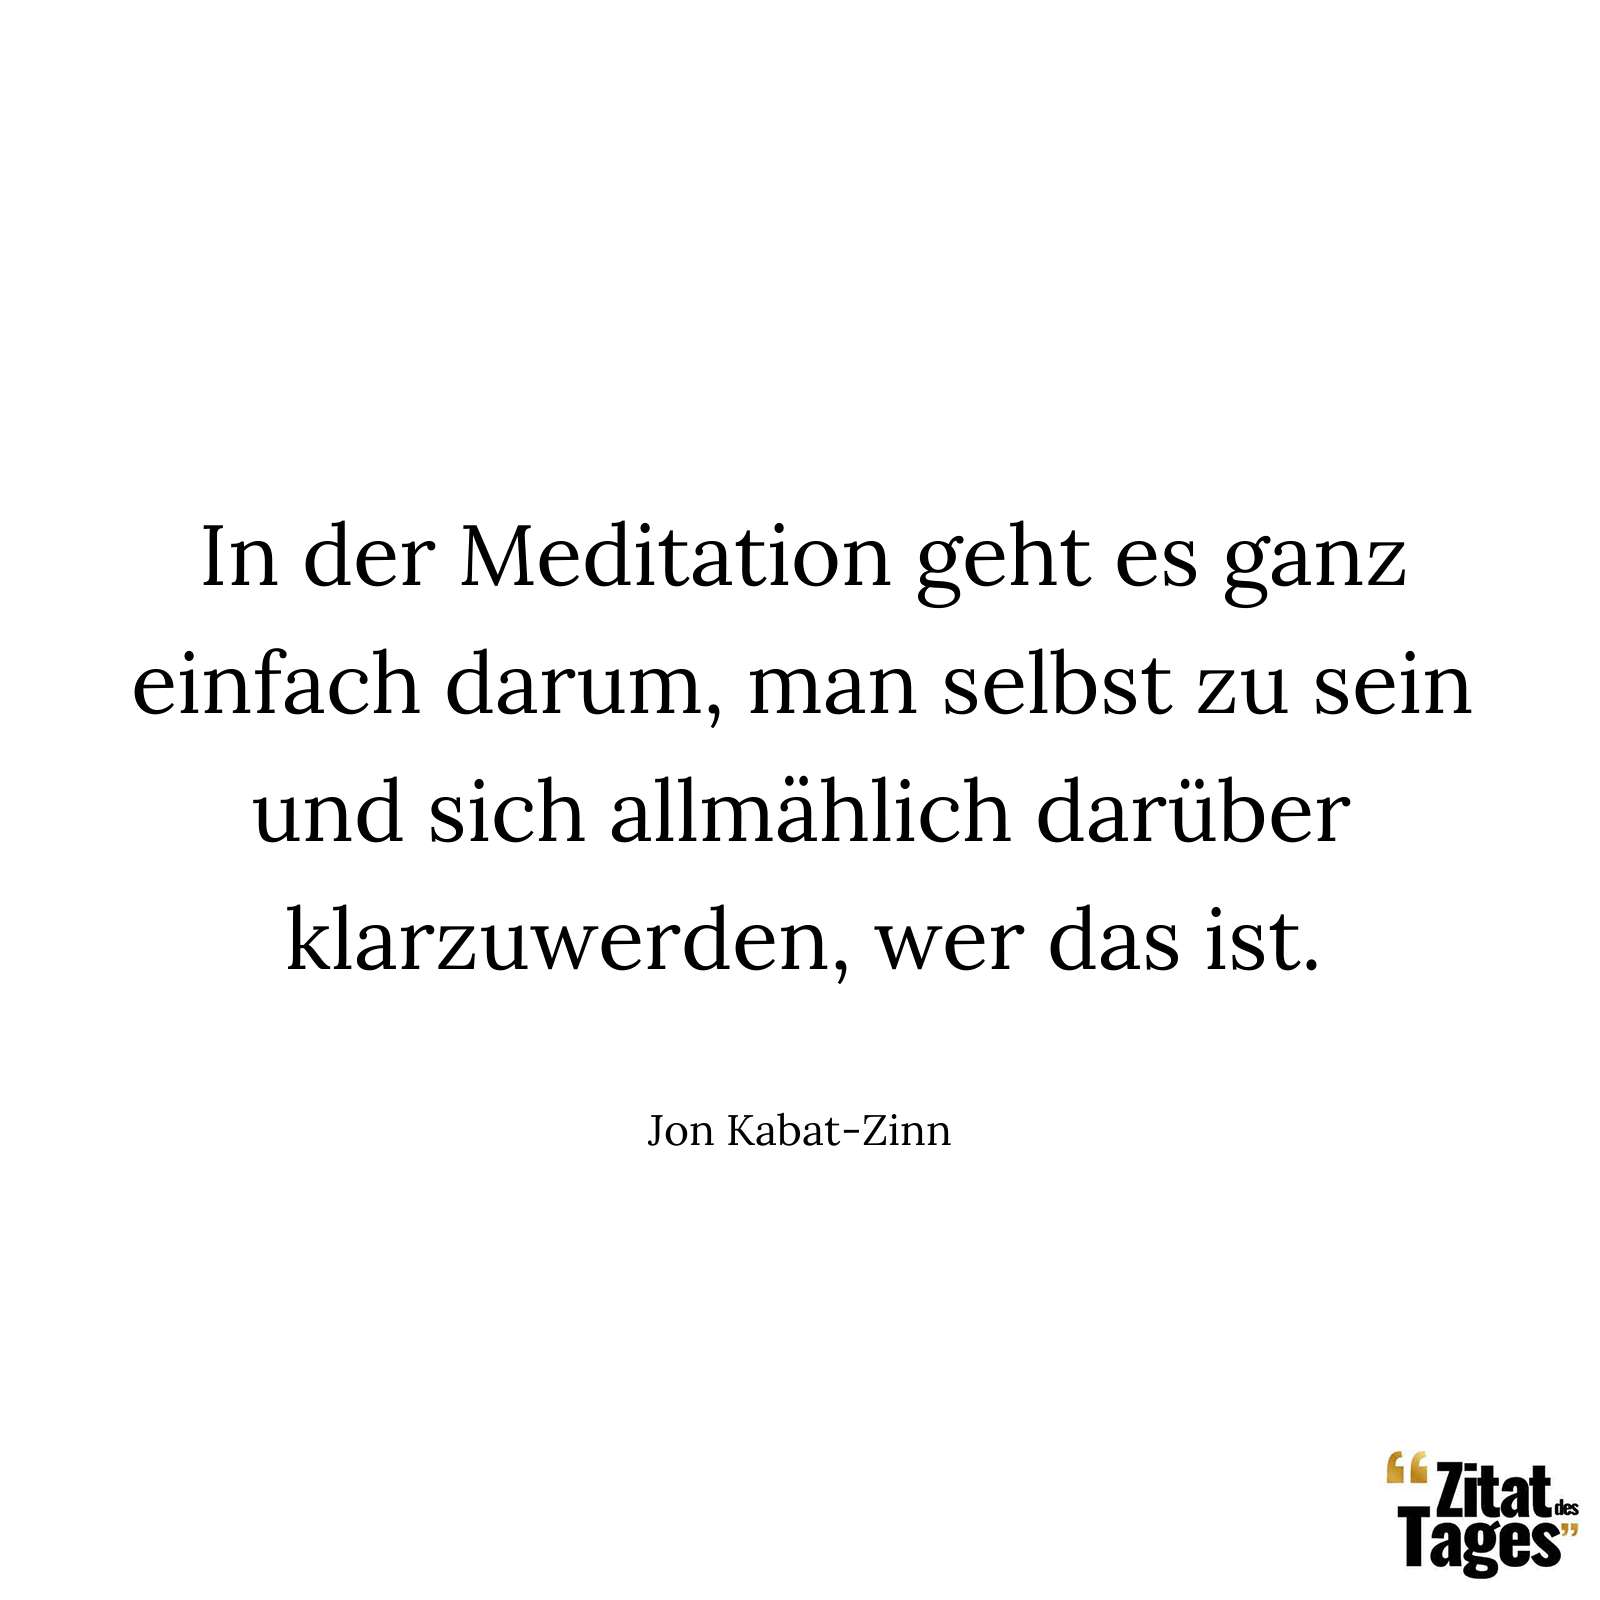 In der Meditation geht es ganz einfach darum, man selbst zu sein und sich allmählich darüber klarzuwerden, wer das ist. - Jon Kabat-Zinn